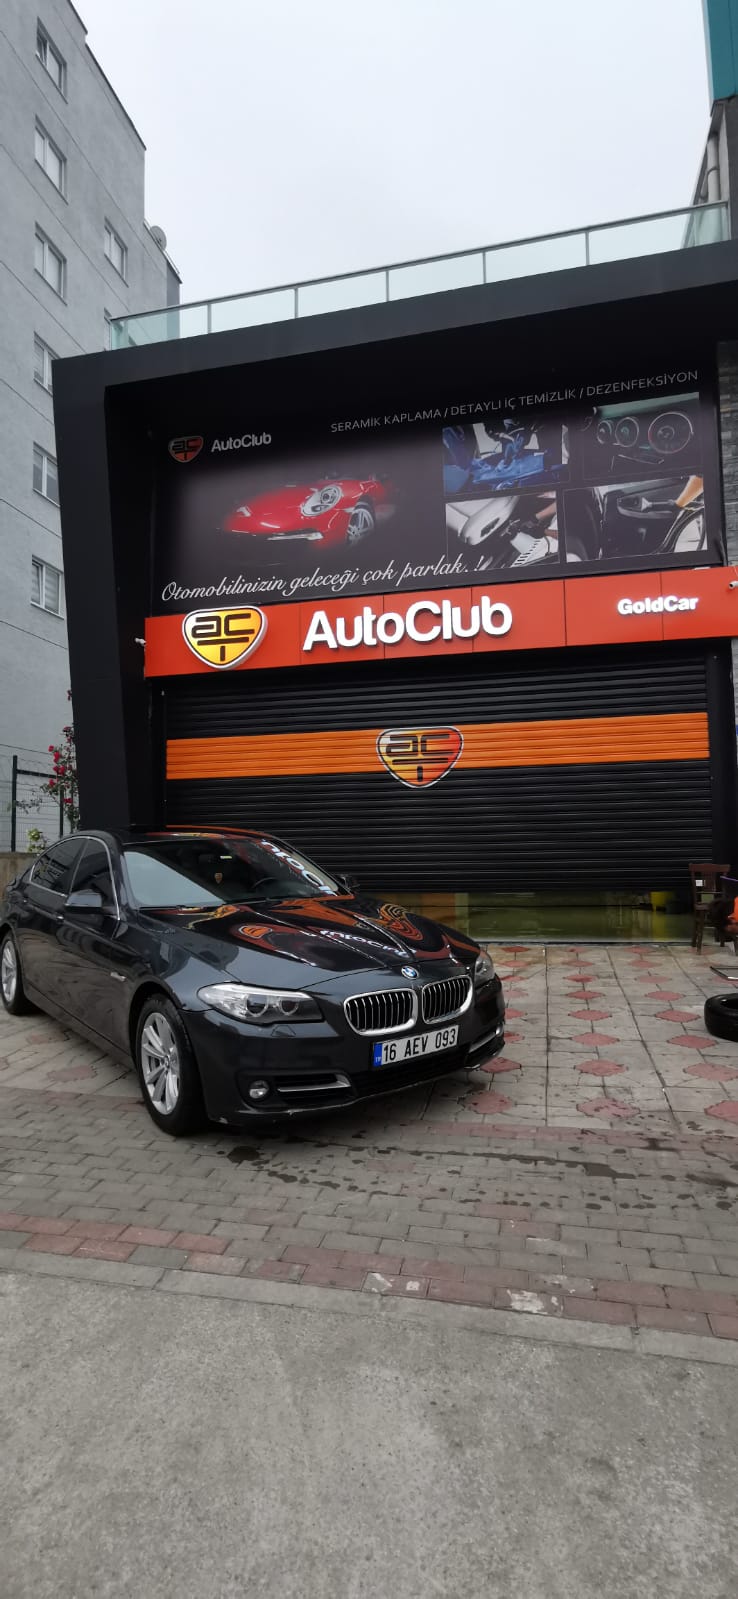 AutoClub Gold Car - Bursa